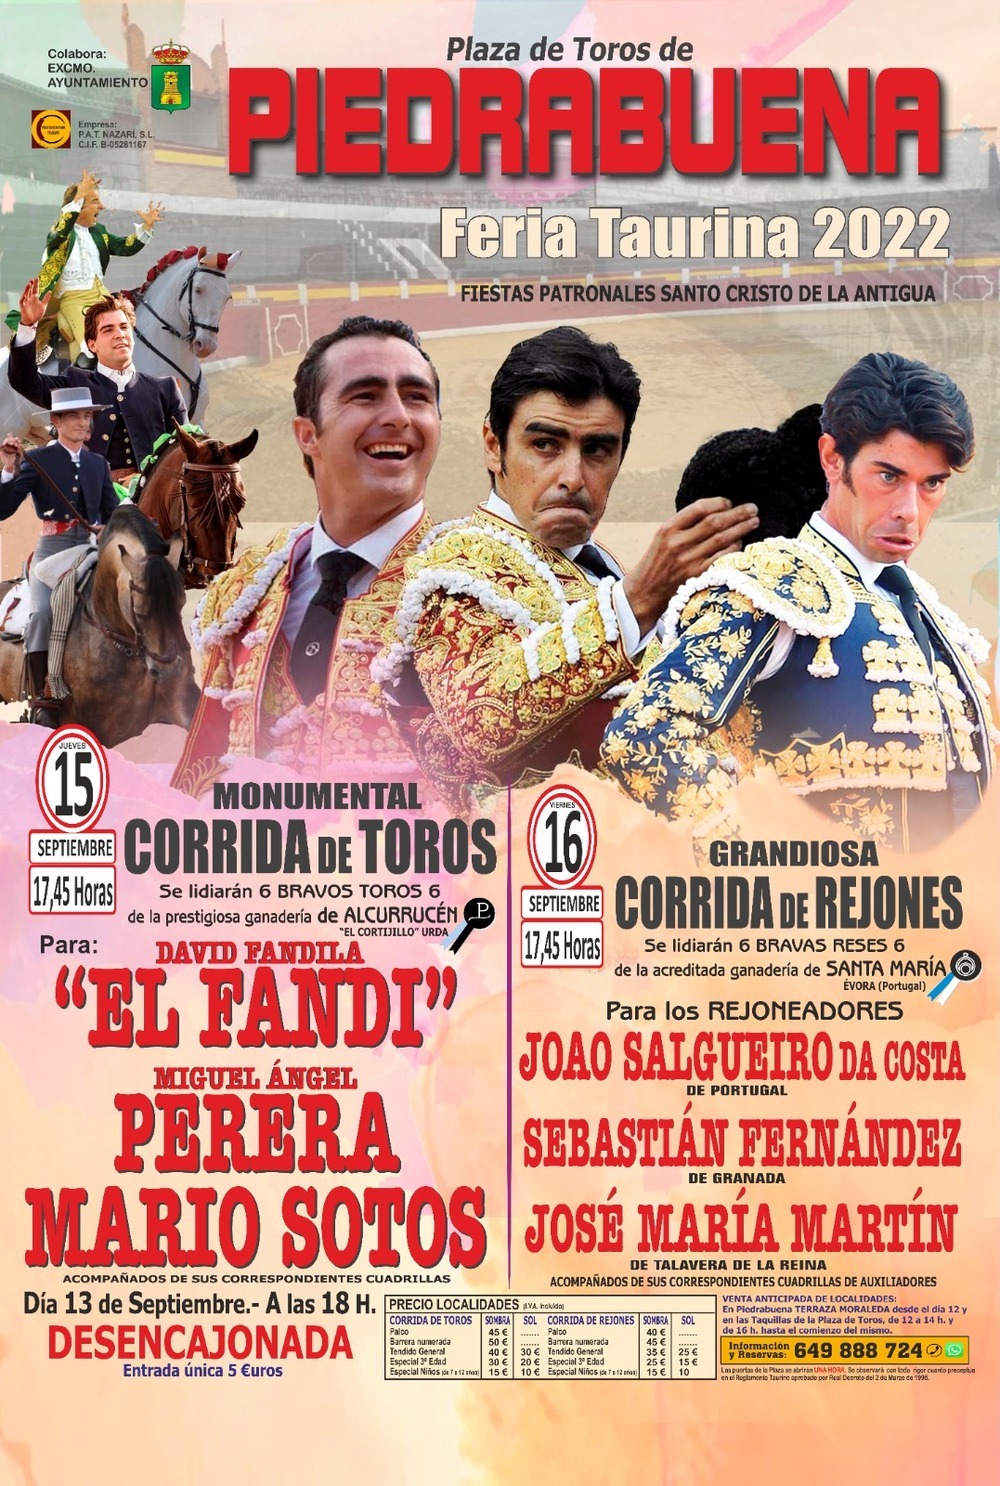 El Fandi, Perera y Mario Sotos se citan en Piedrabuena